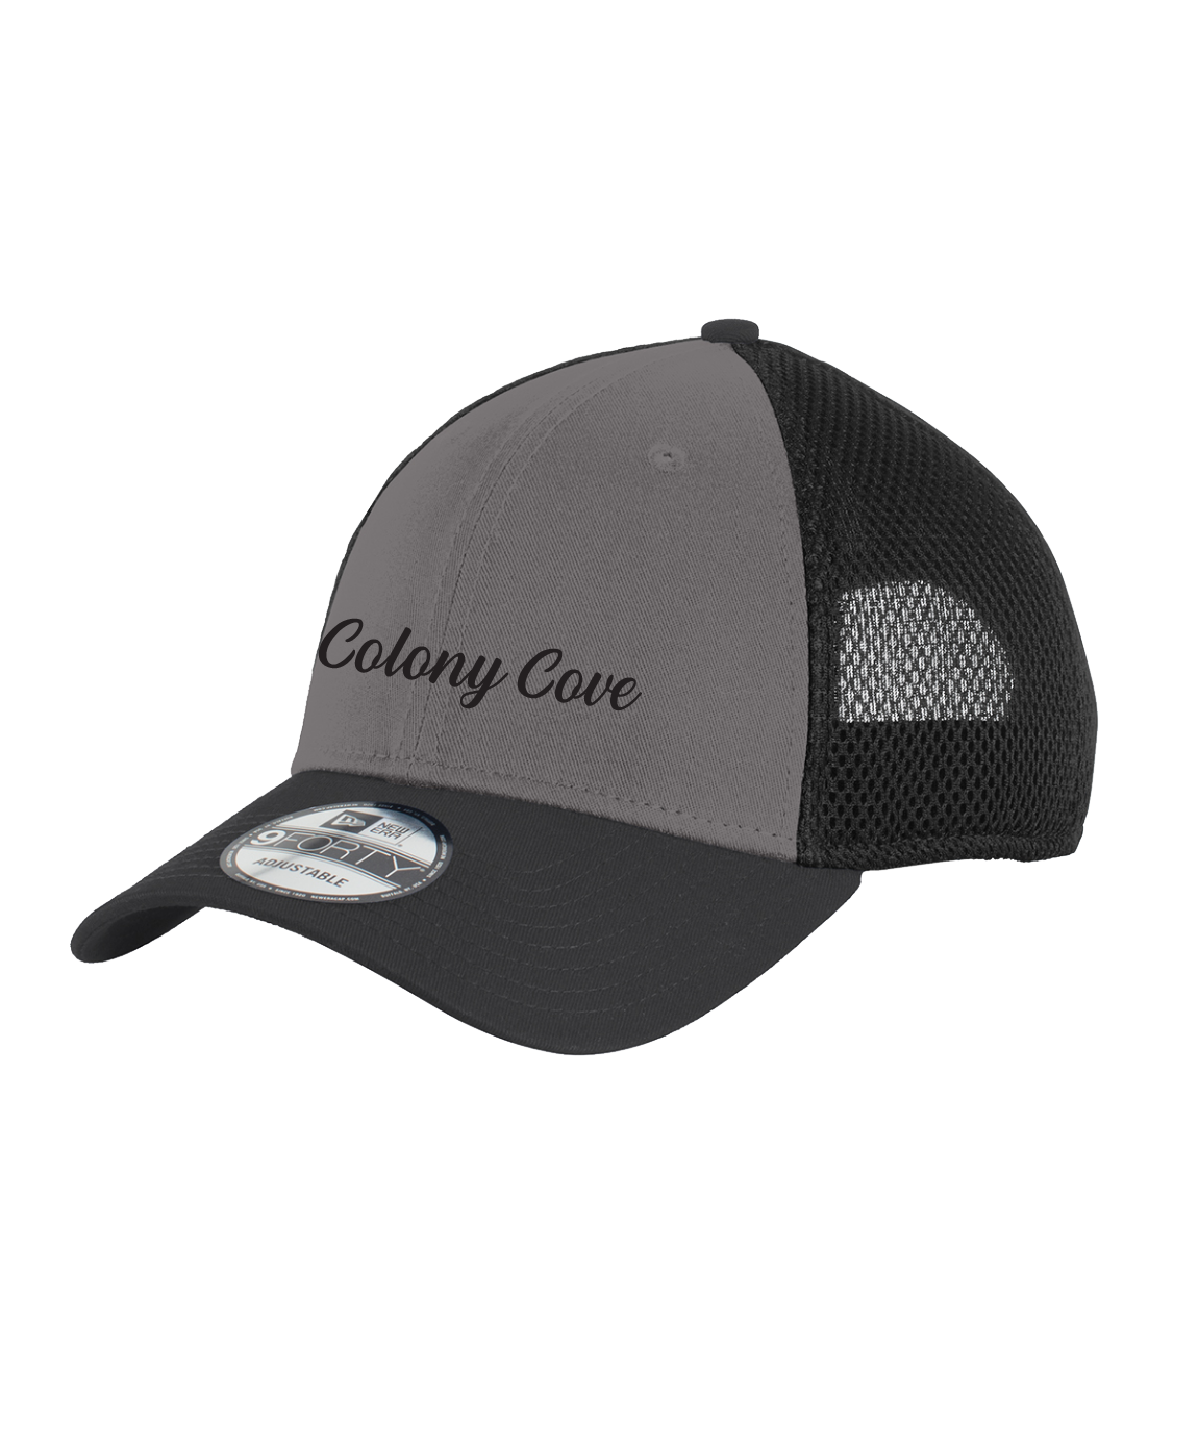 Colony Cove - New Era® - Snapback Contrast Front Mesh Cap